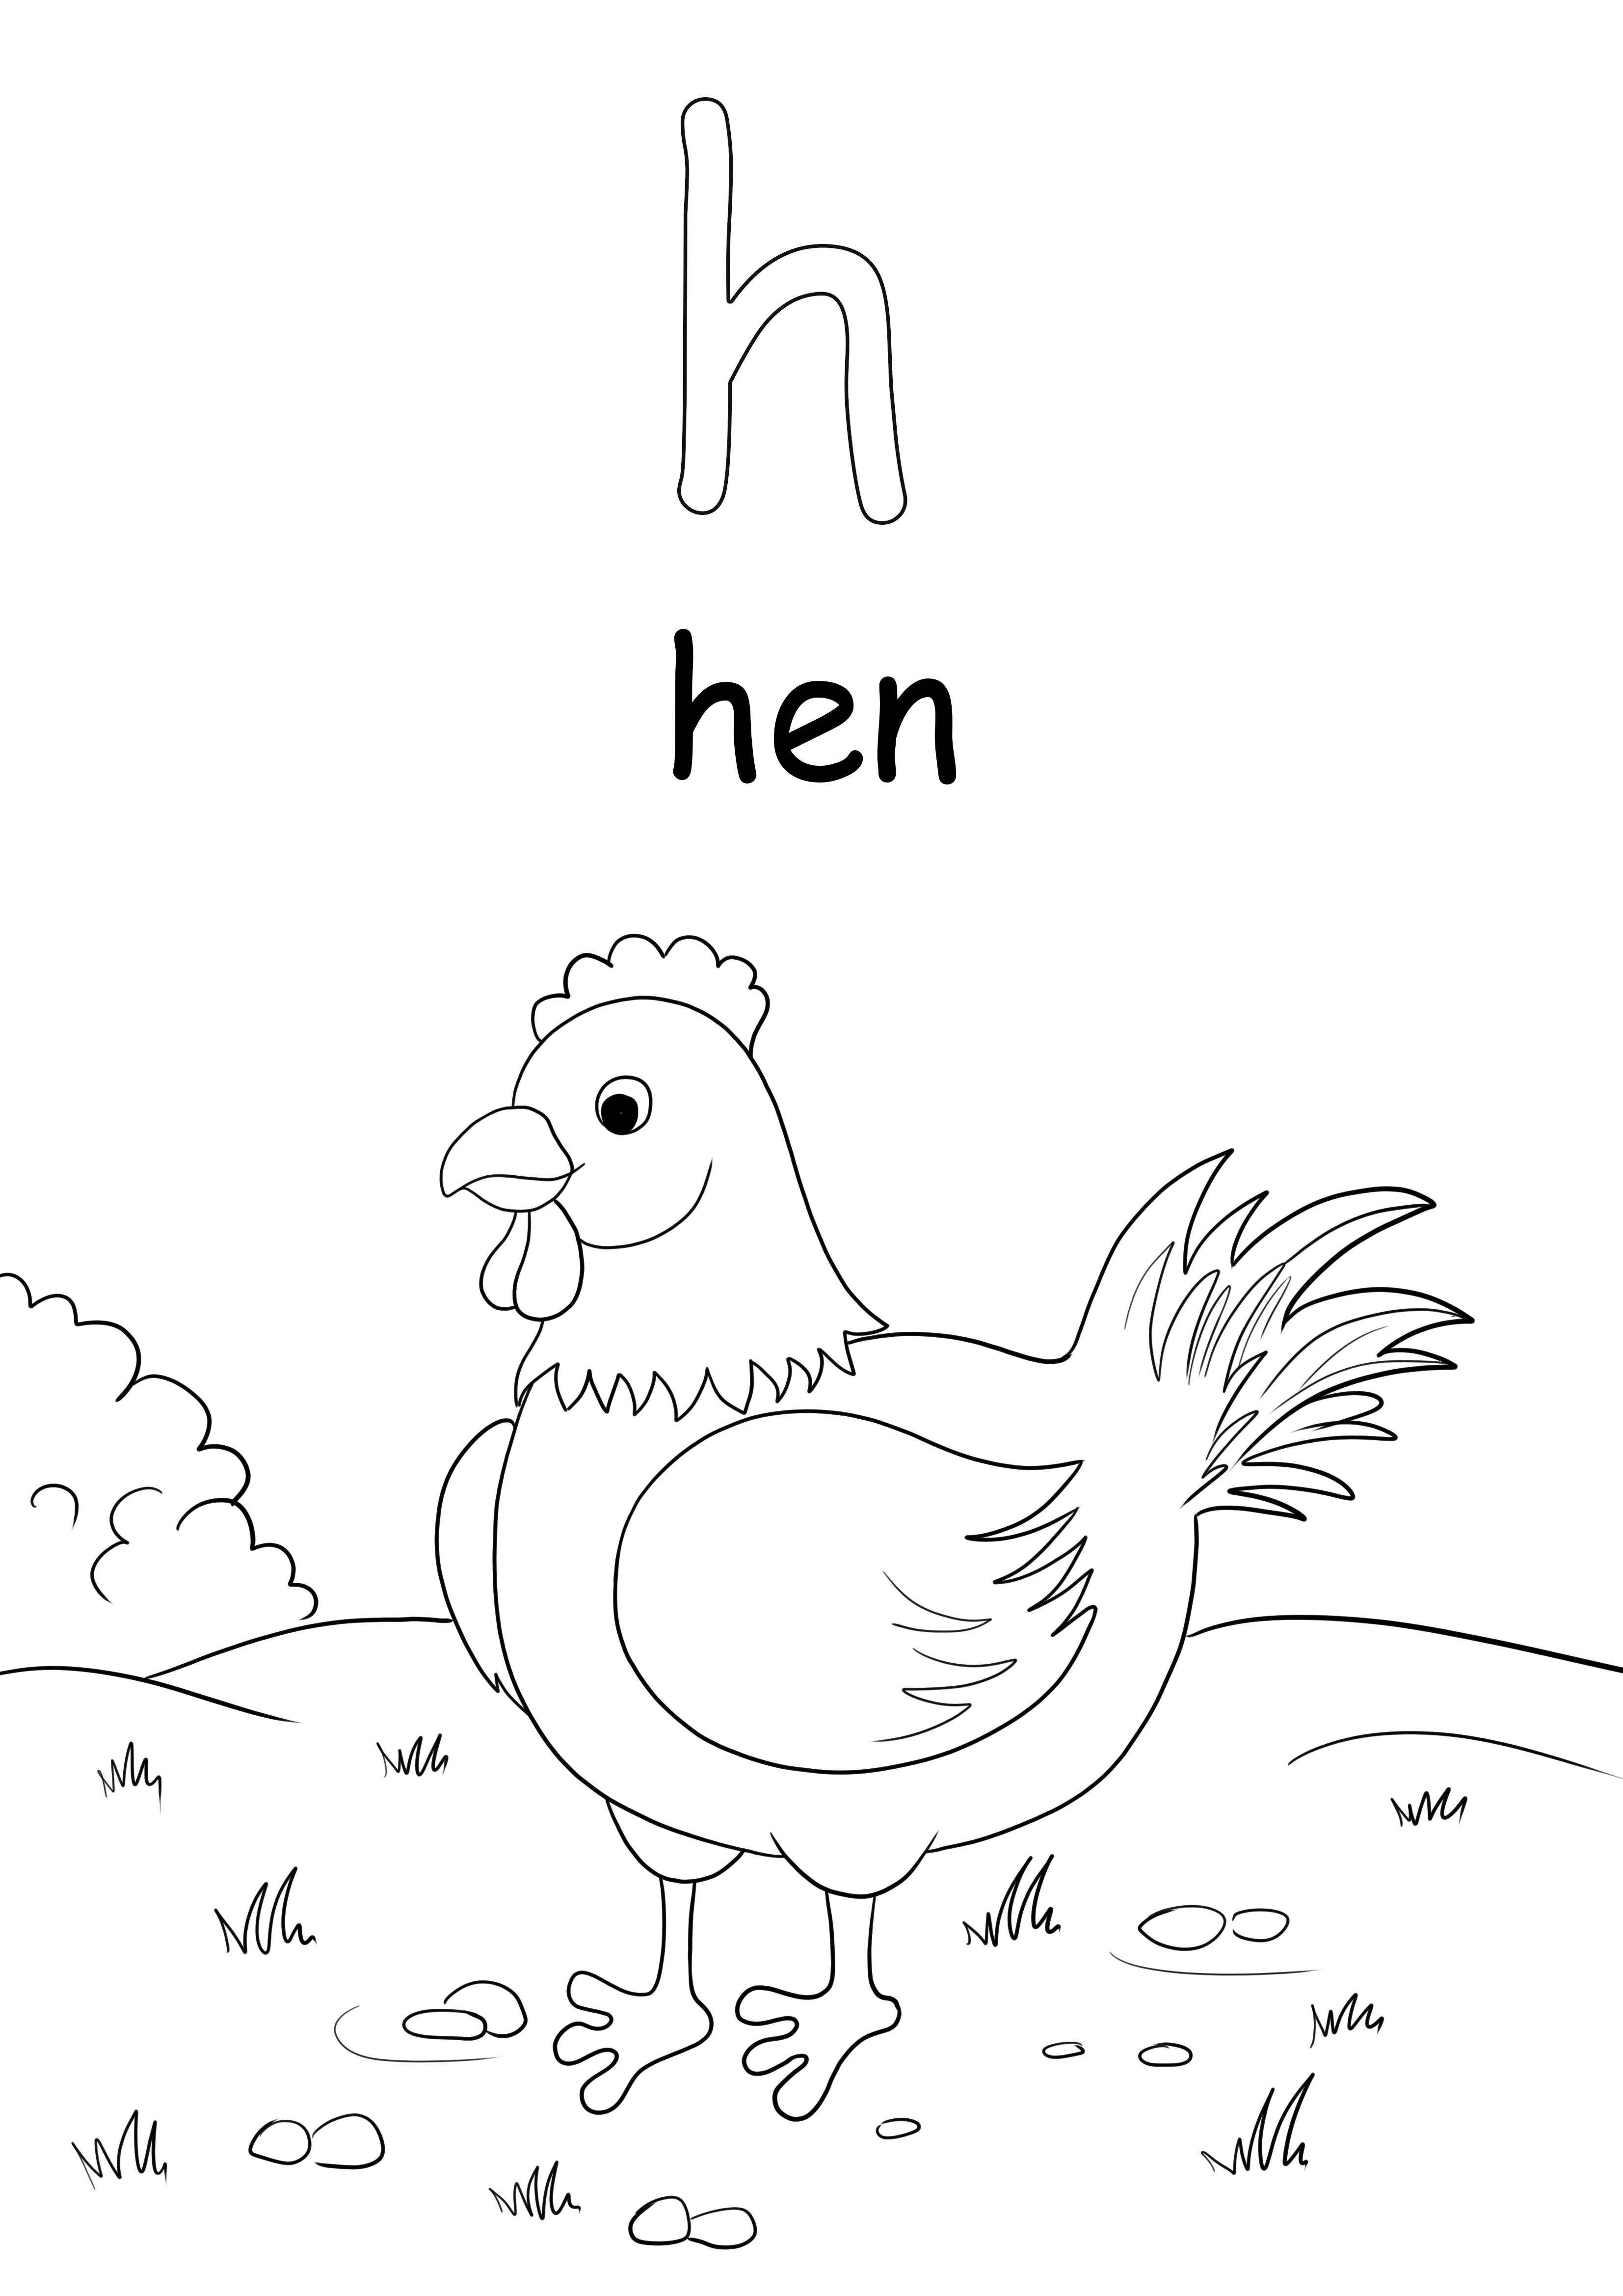 Der Kleinbuchstabe h ist für Henne Wort kostenlos druckbar für Kinder